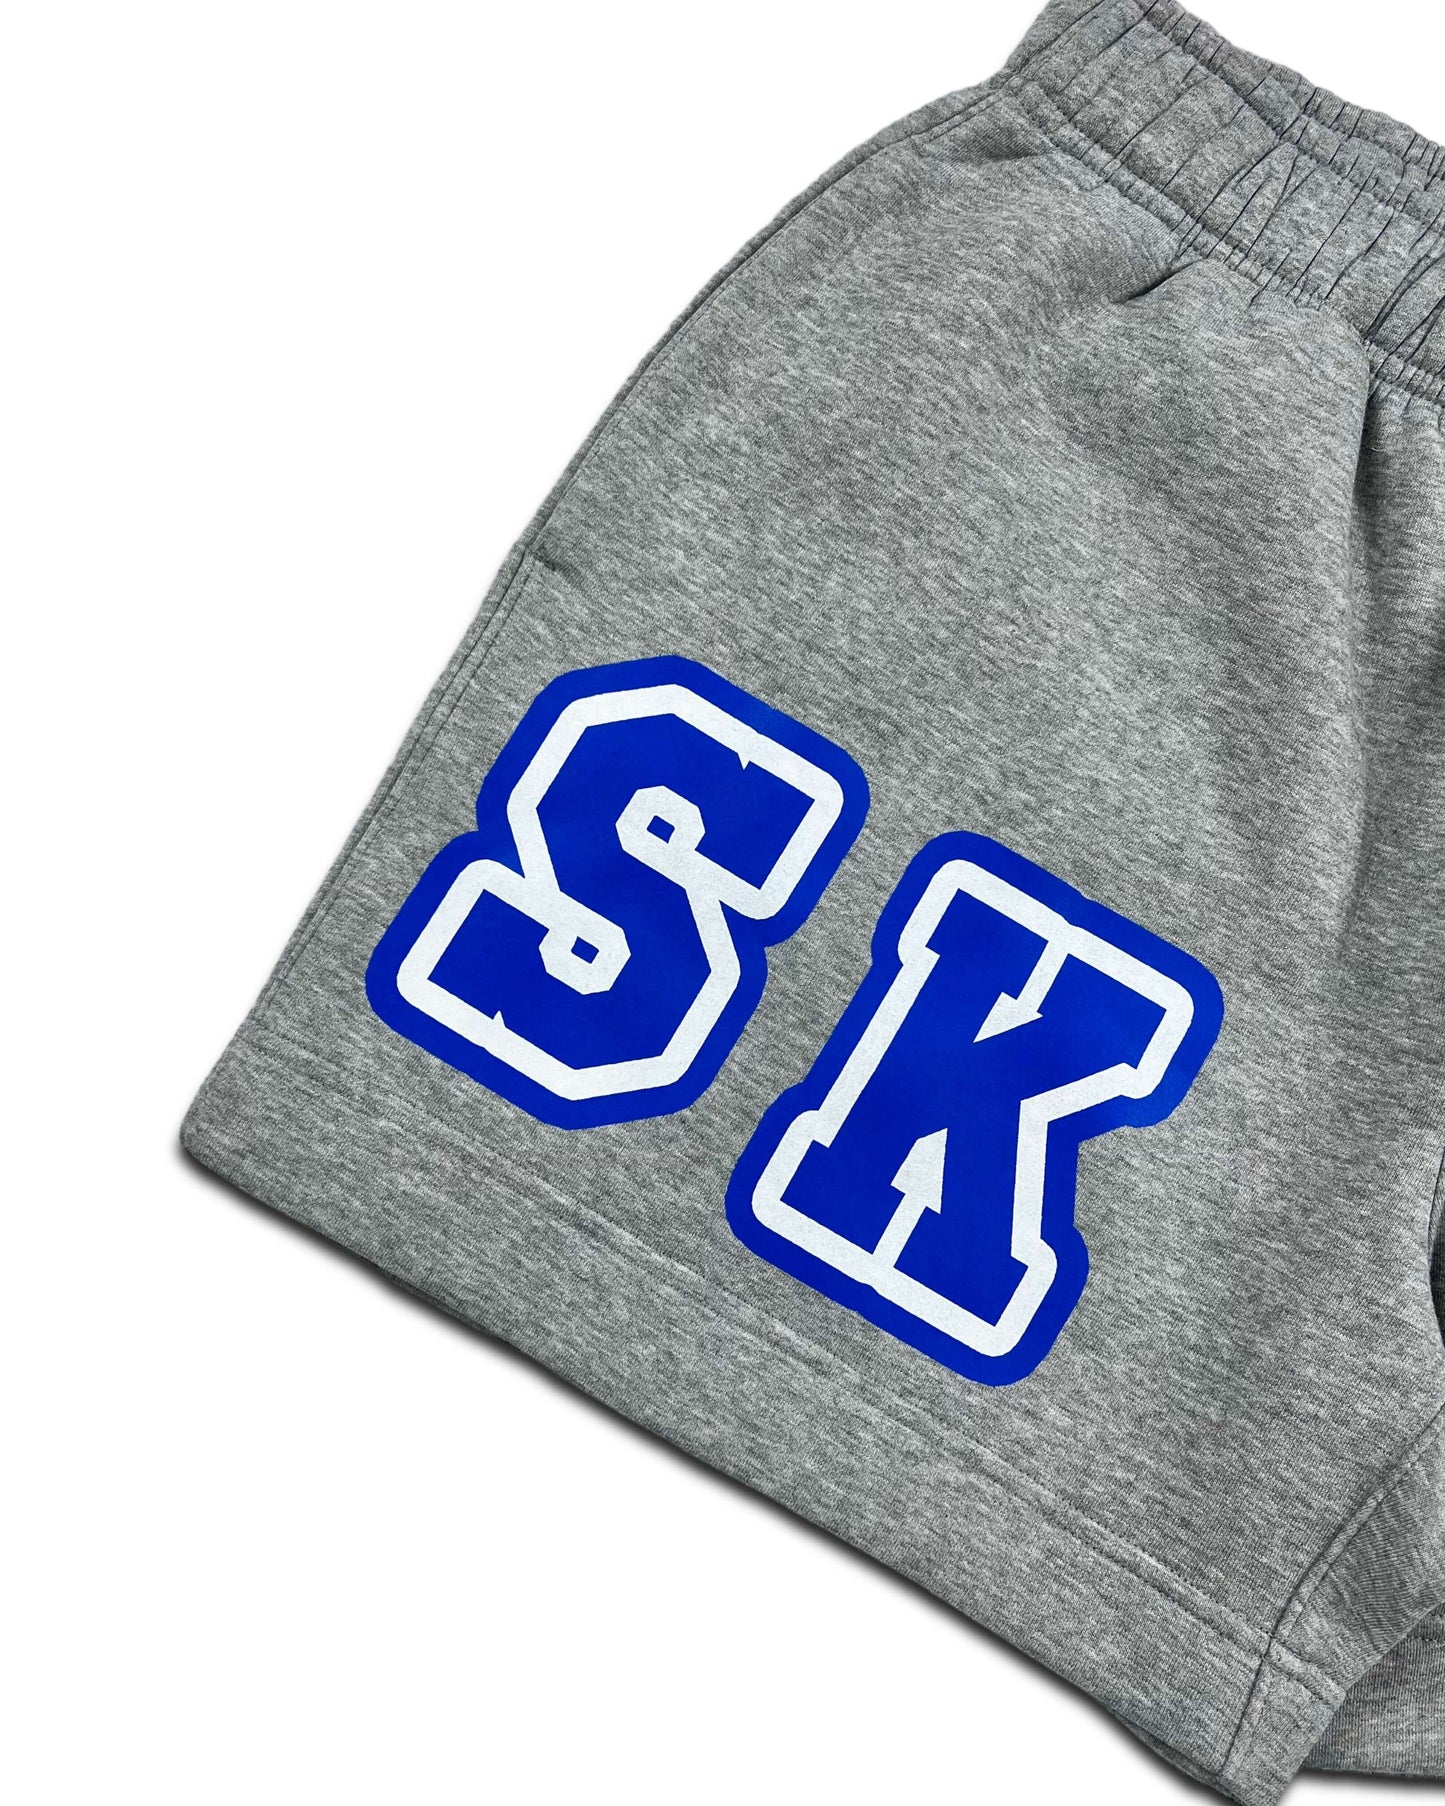 SKRD Sweat Shorts- Grey/Blue